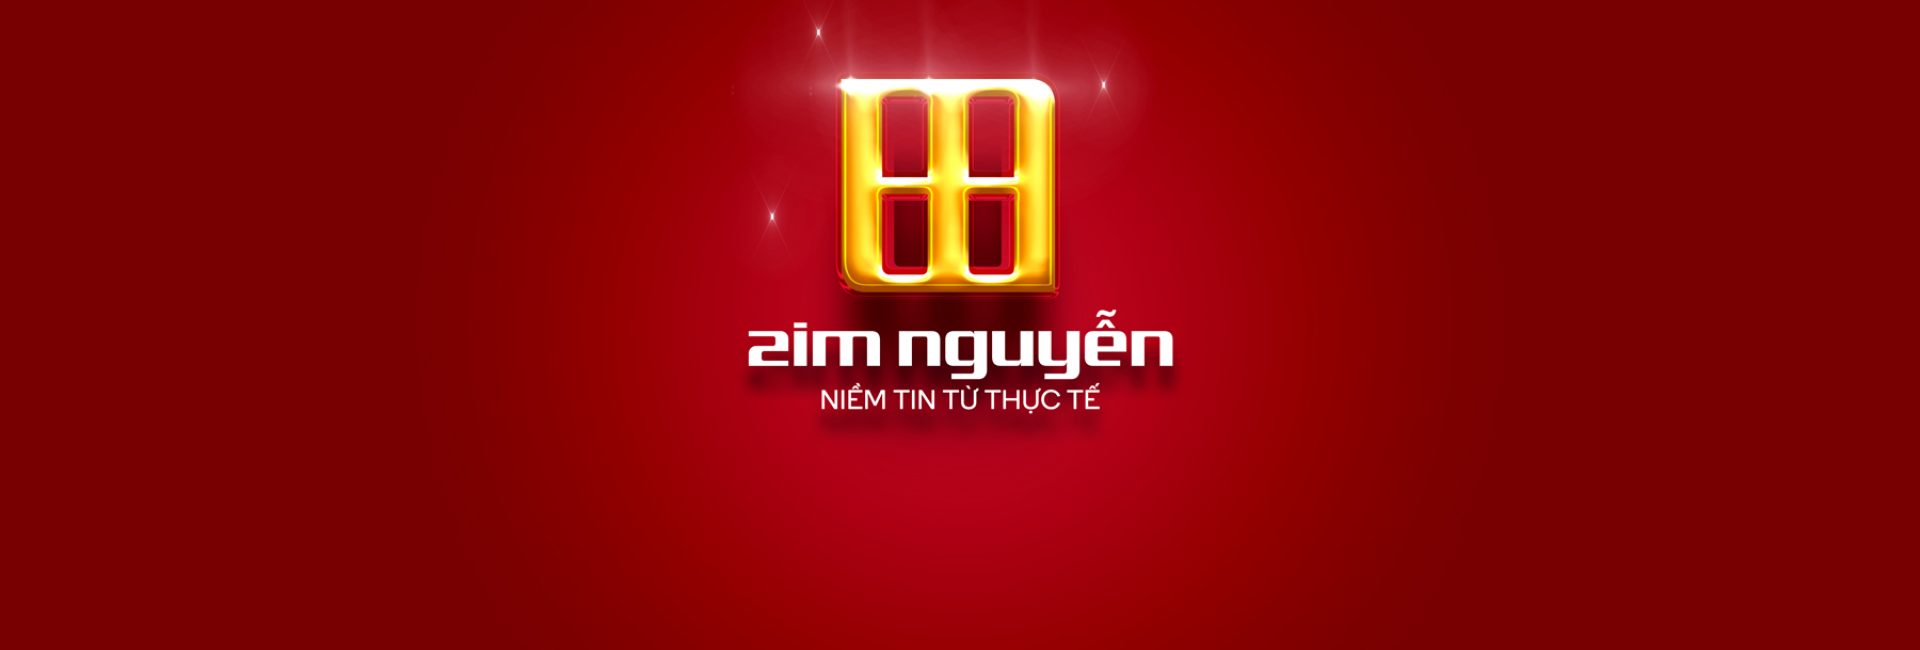 Zim Nguyễn 87 89 Xa Lộ Hà Nội, Phường Thảo Điền, Quận 2 Giá 670 Tỷ